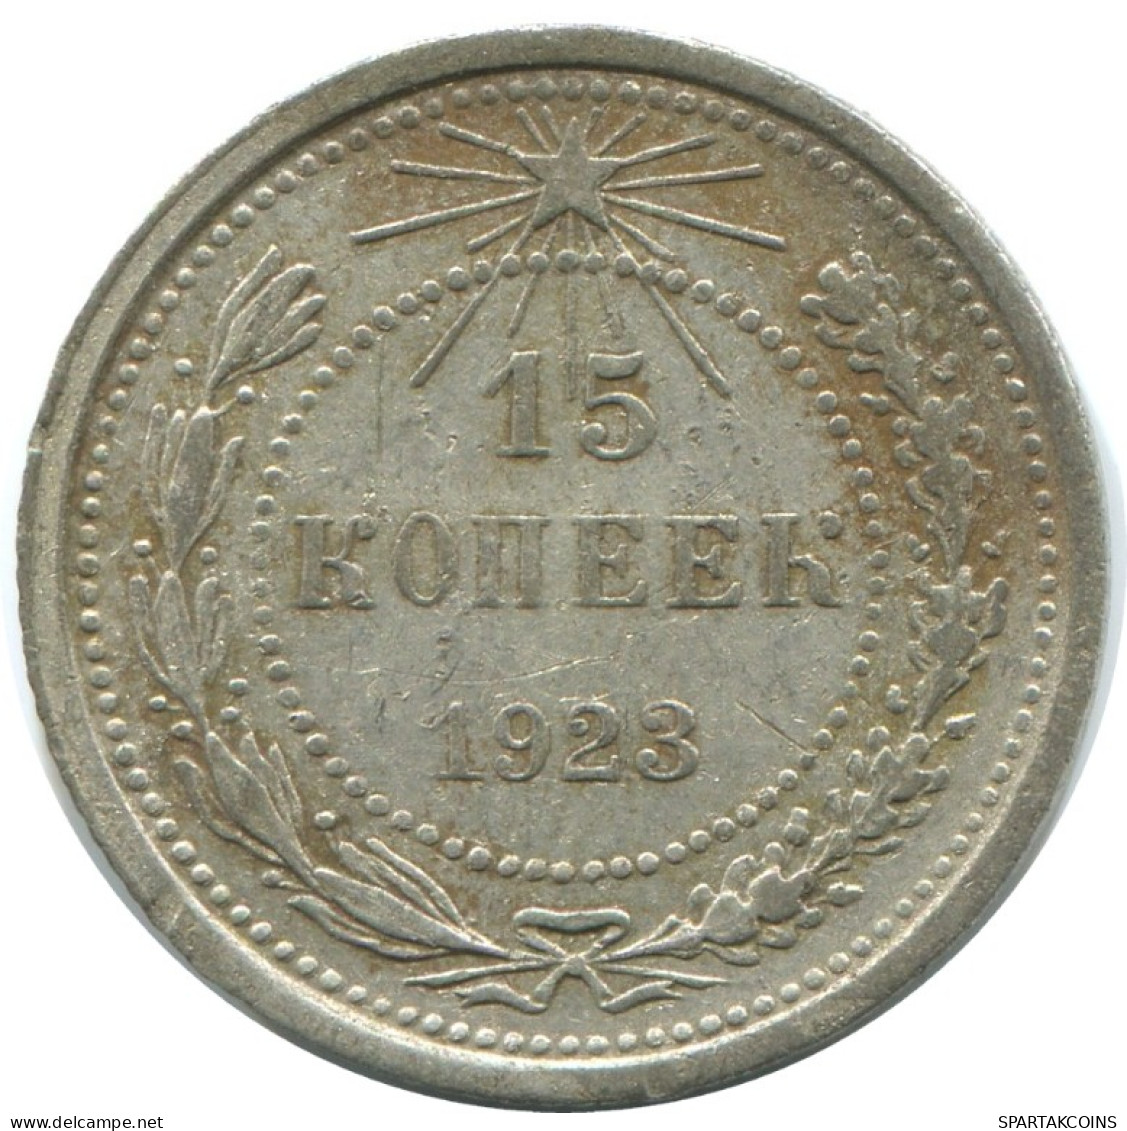 15 KOPEKS 1923 RUSSIA RSFSR SILVER Coin HIGH GRADE #AF119.4.U.A - Russland